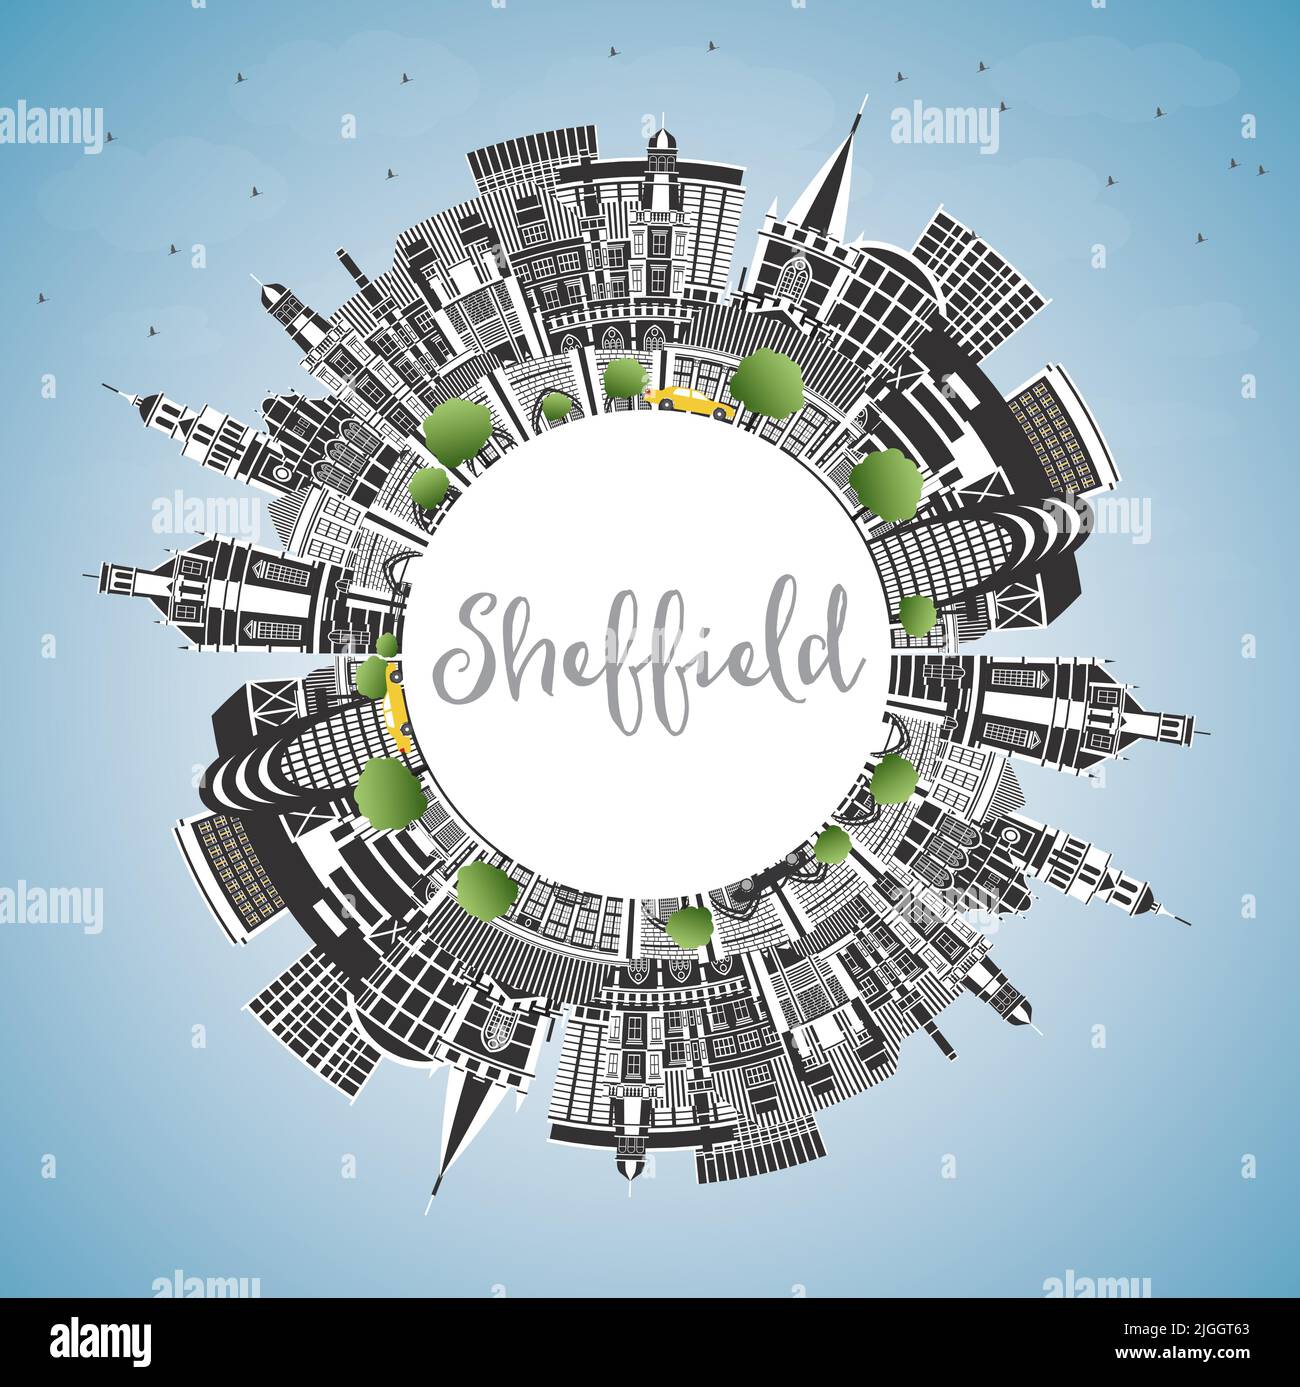 Sheffield UK City Skyline avec bâtiments couleur, ciel bleu et espace de copie. Illustration vectorielle. Ville de Sheffield dans le Yorkshire du Sud avec sites touristiques. Illustration de Vecteur